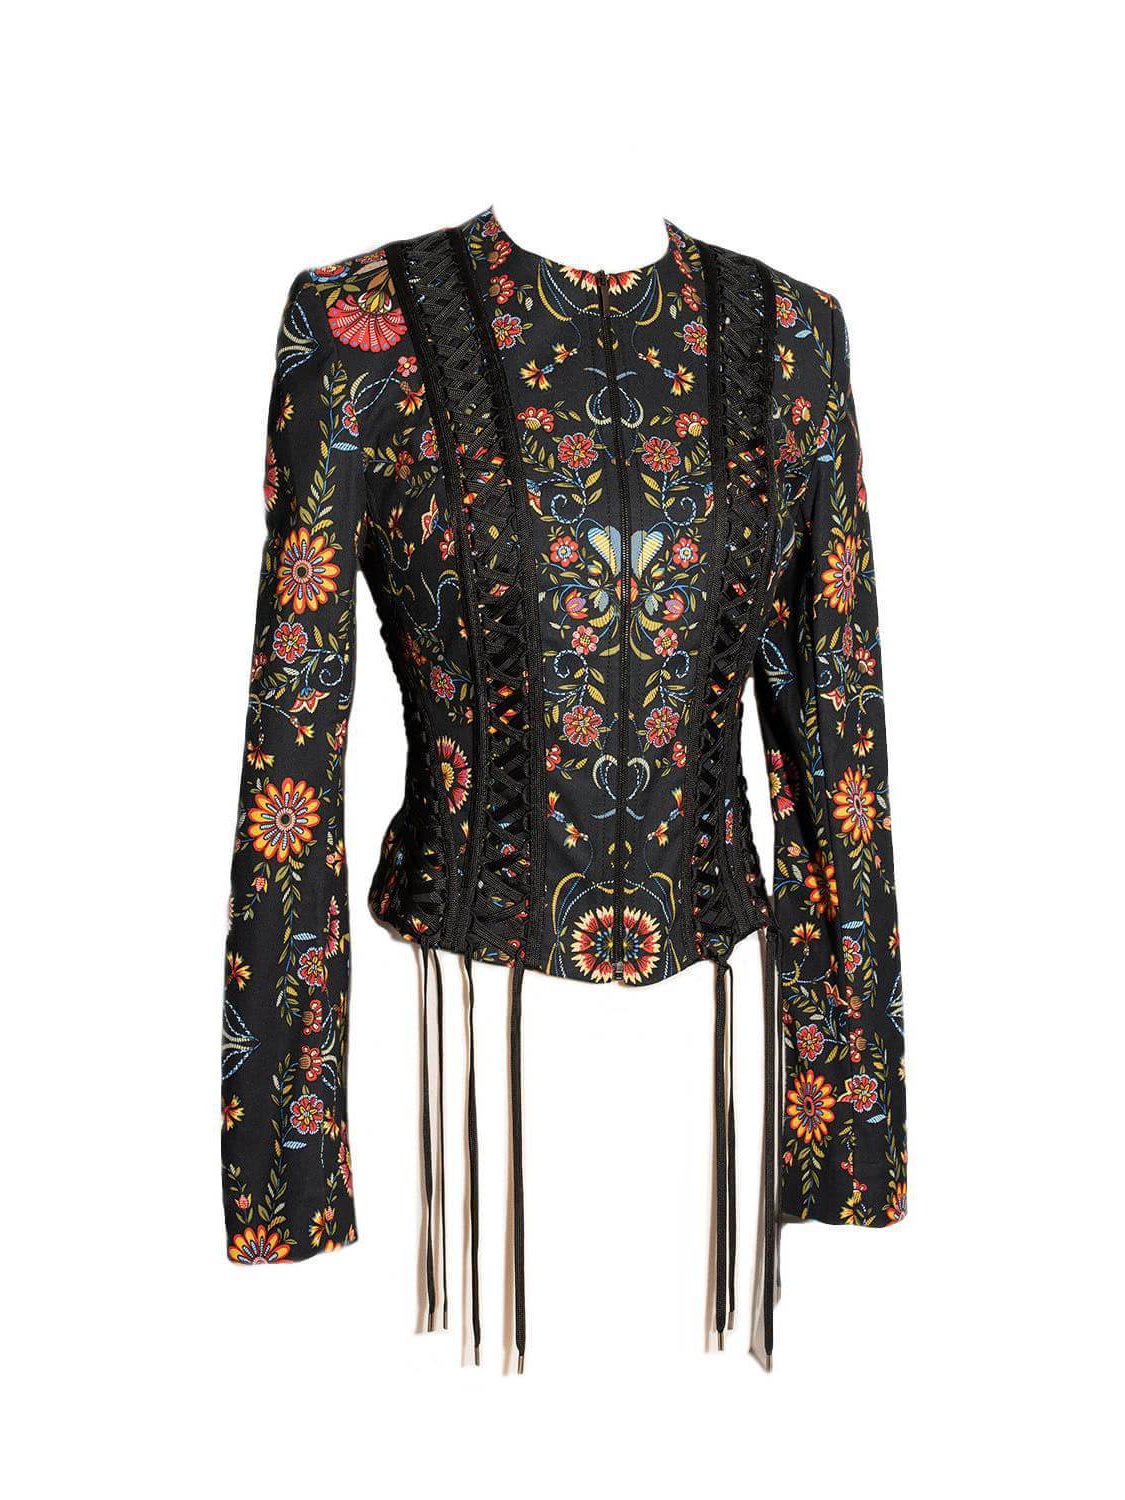 Christian Dior Cotton Embroidered Floral Laced Jacket Black-designer resale